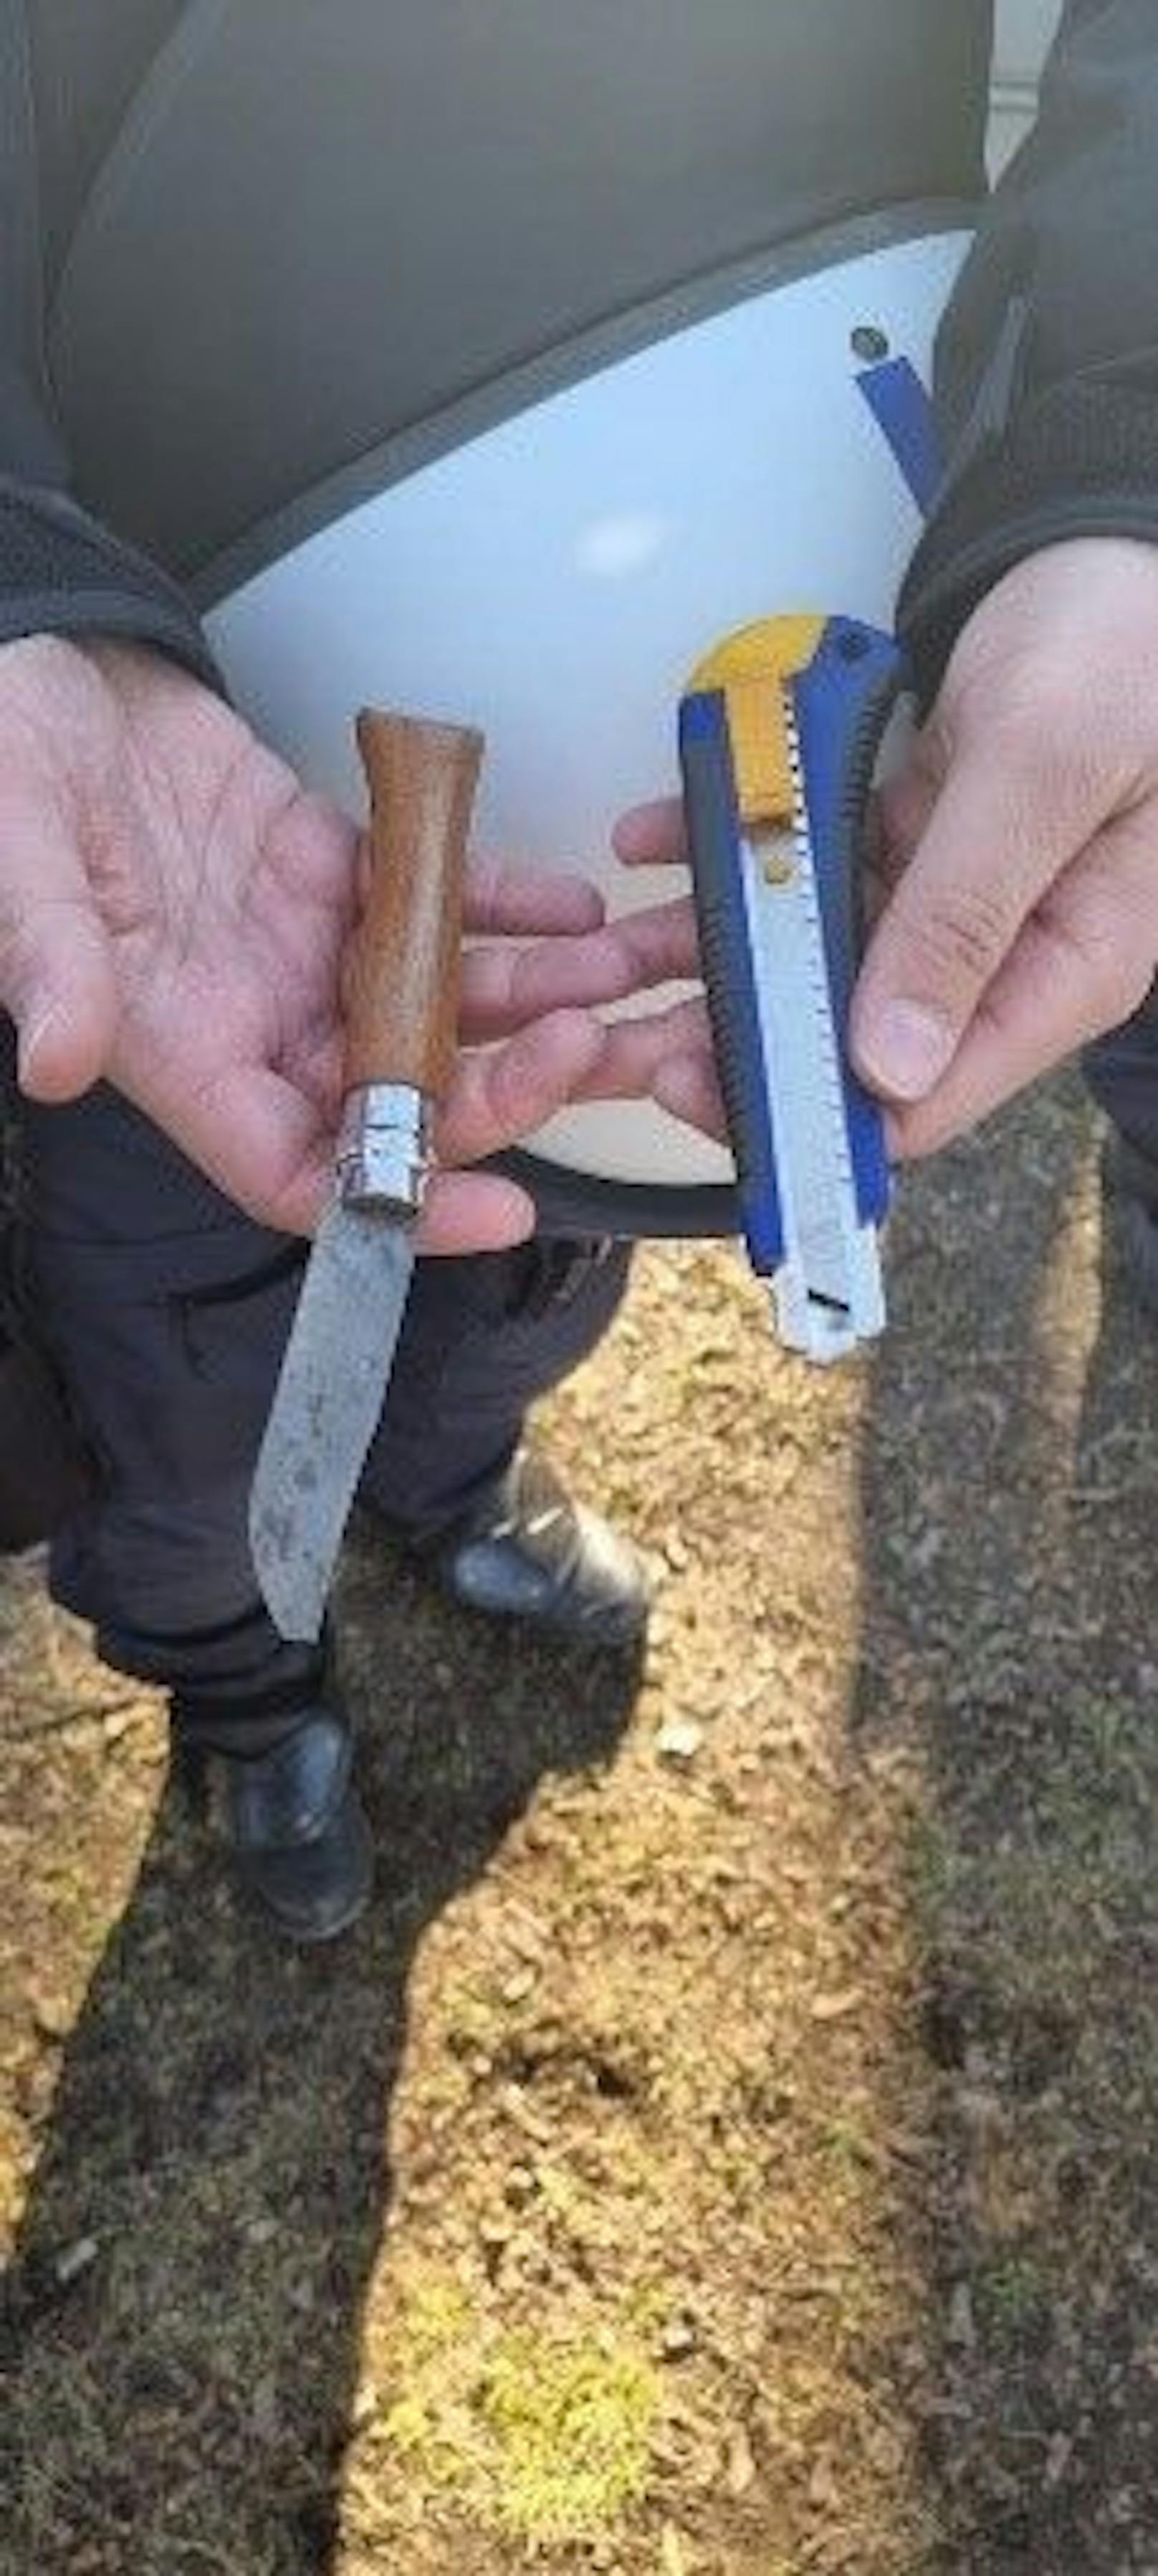 Die Wiener Polizei stellte bei der Corona-Demo gleich mehrere Messer sicher.